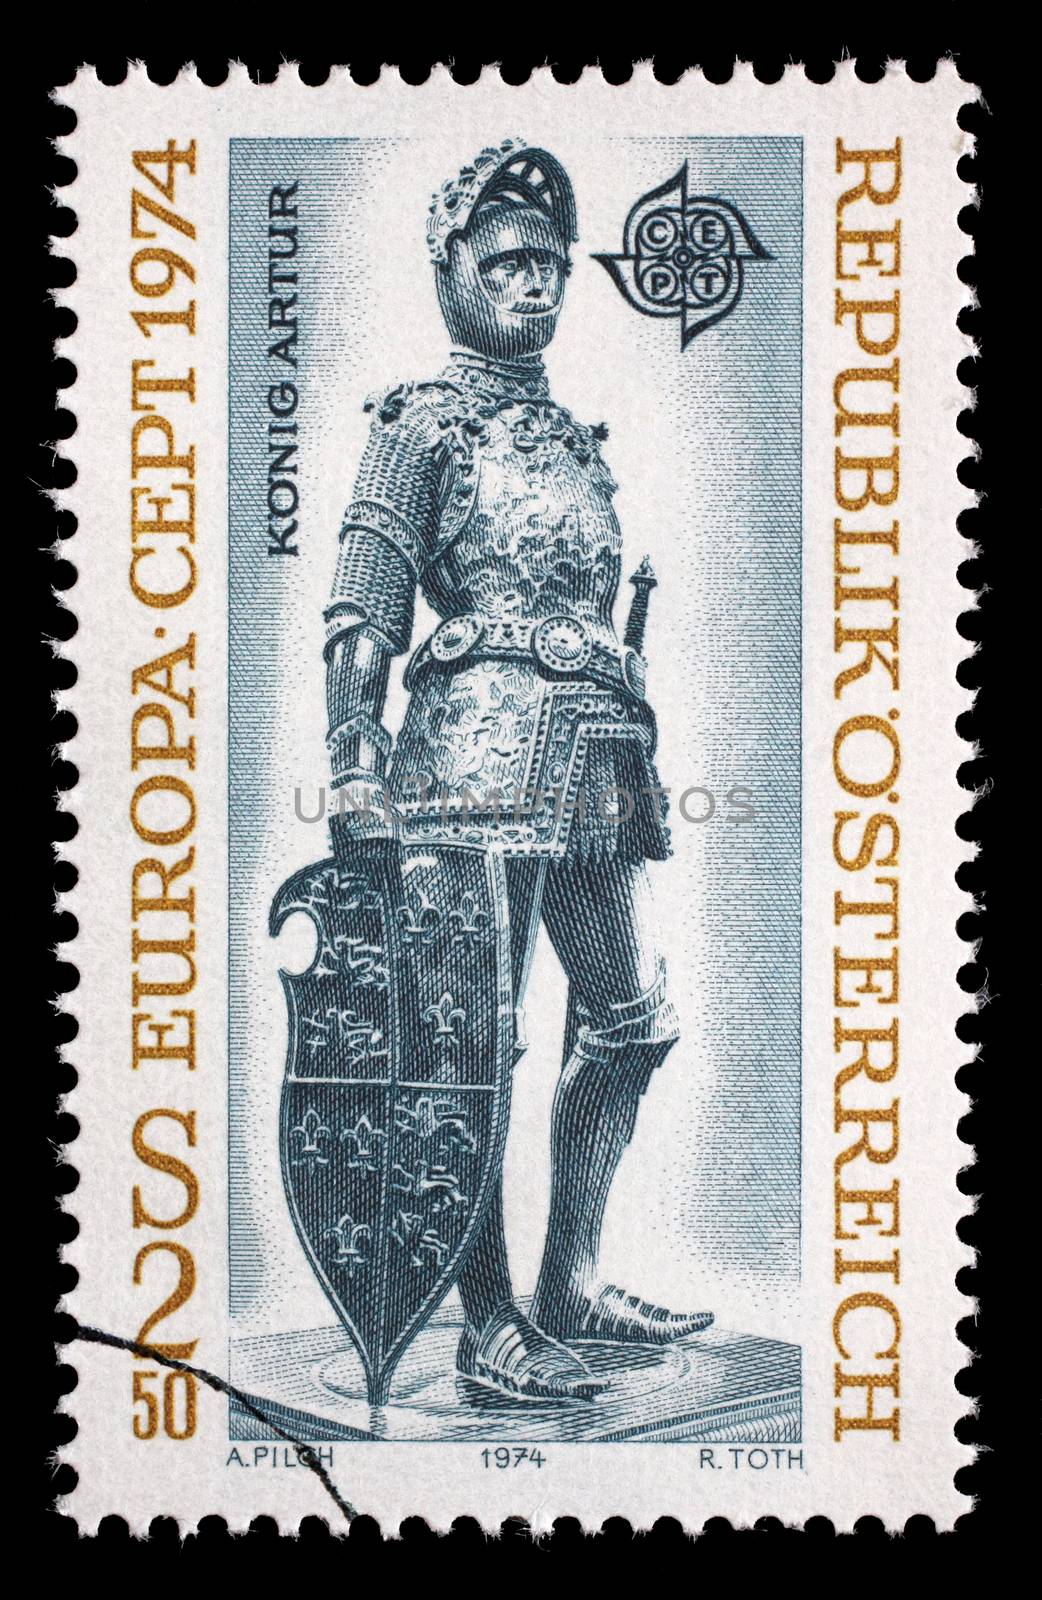 Stamp printed in Austria, shows a bronze figure of "King Arthur of England" by Albrecht Durer and Peter Vischer, Hofkirche, Innsbruck, circa 1974